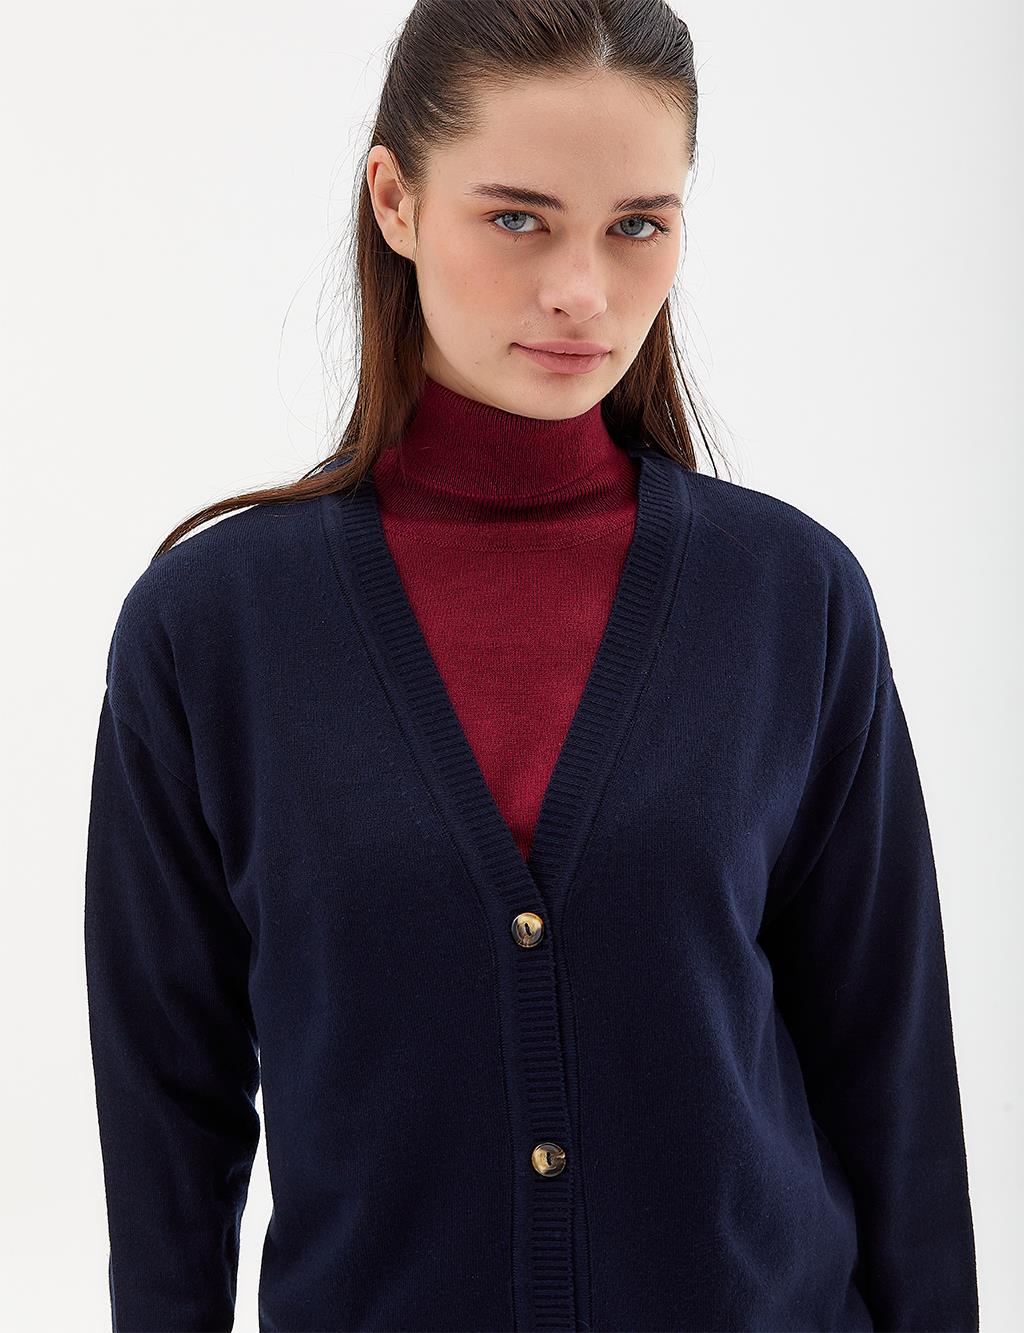 Basic Knitwear Cardigan Navy Blue